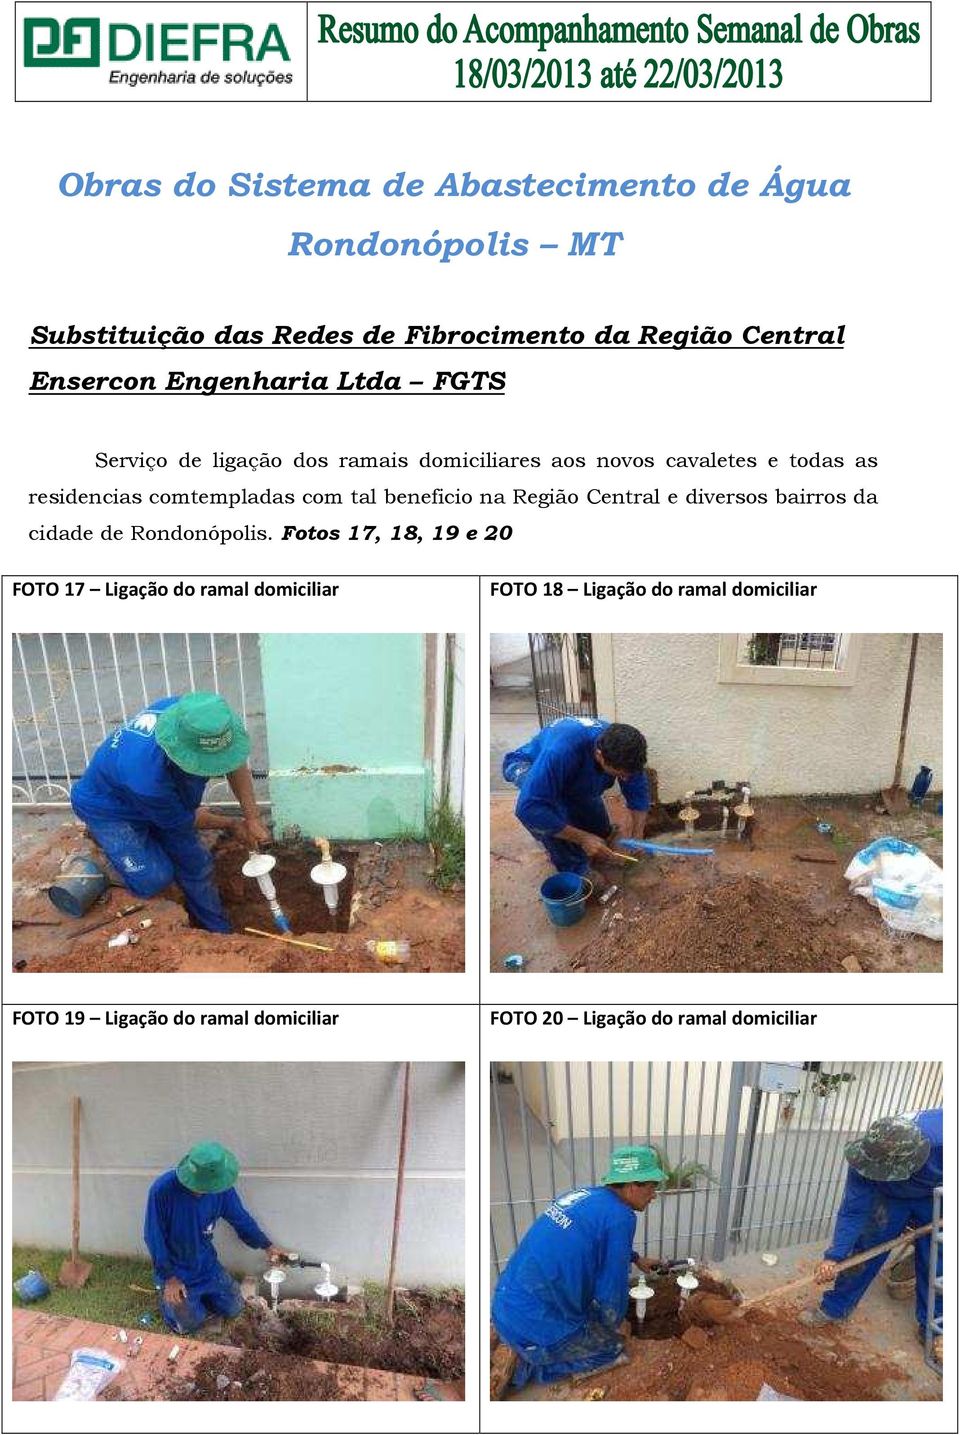 comtempladas com tal beneficio na Região Central e diversos bairros da cidade de Rondonópolis.